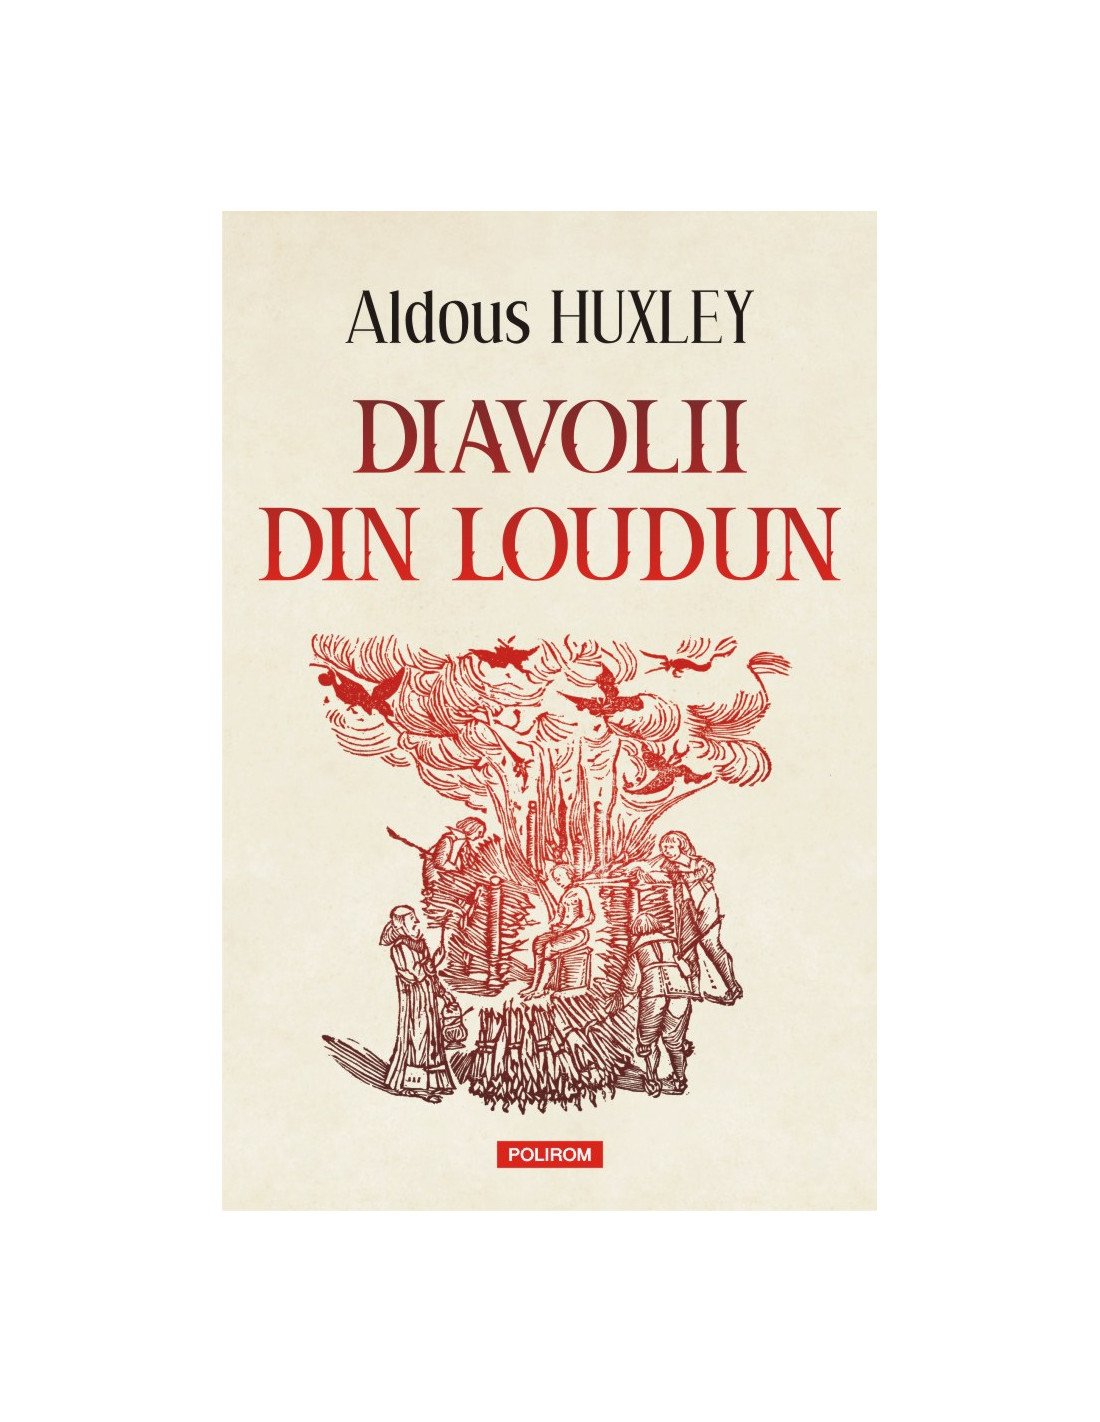  Una dintre cele mai bune lucrări non-ficționale ale lui Aldous Huxley: Diavolii din Loudun